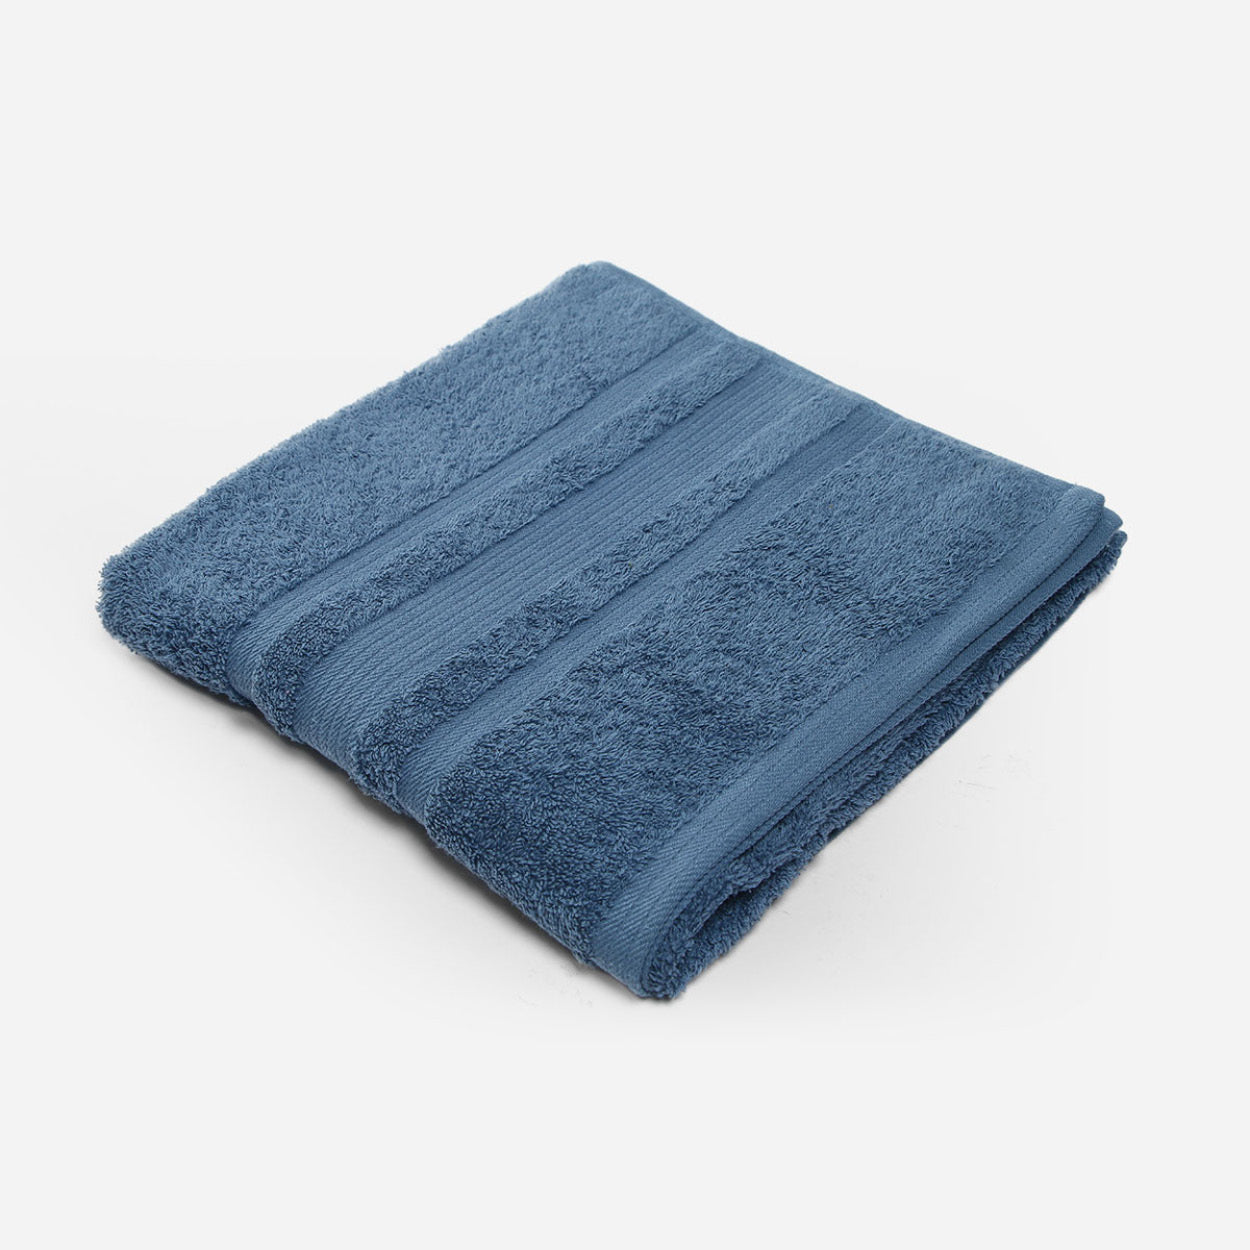 Huson 3 Piece 900 GSM 100% Egyptian Cotton Towel Set Alcott Hill Color: Navy Blue